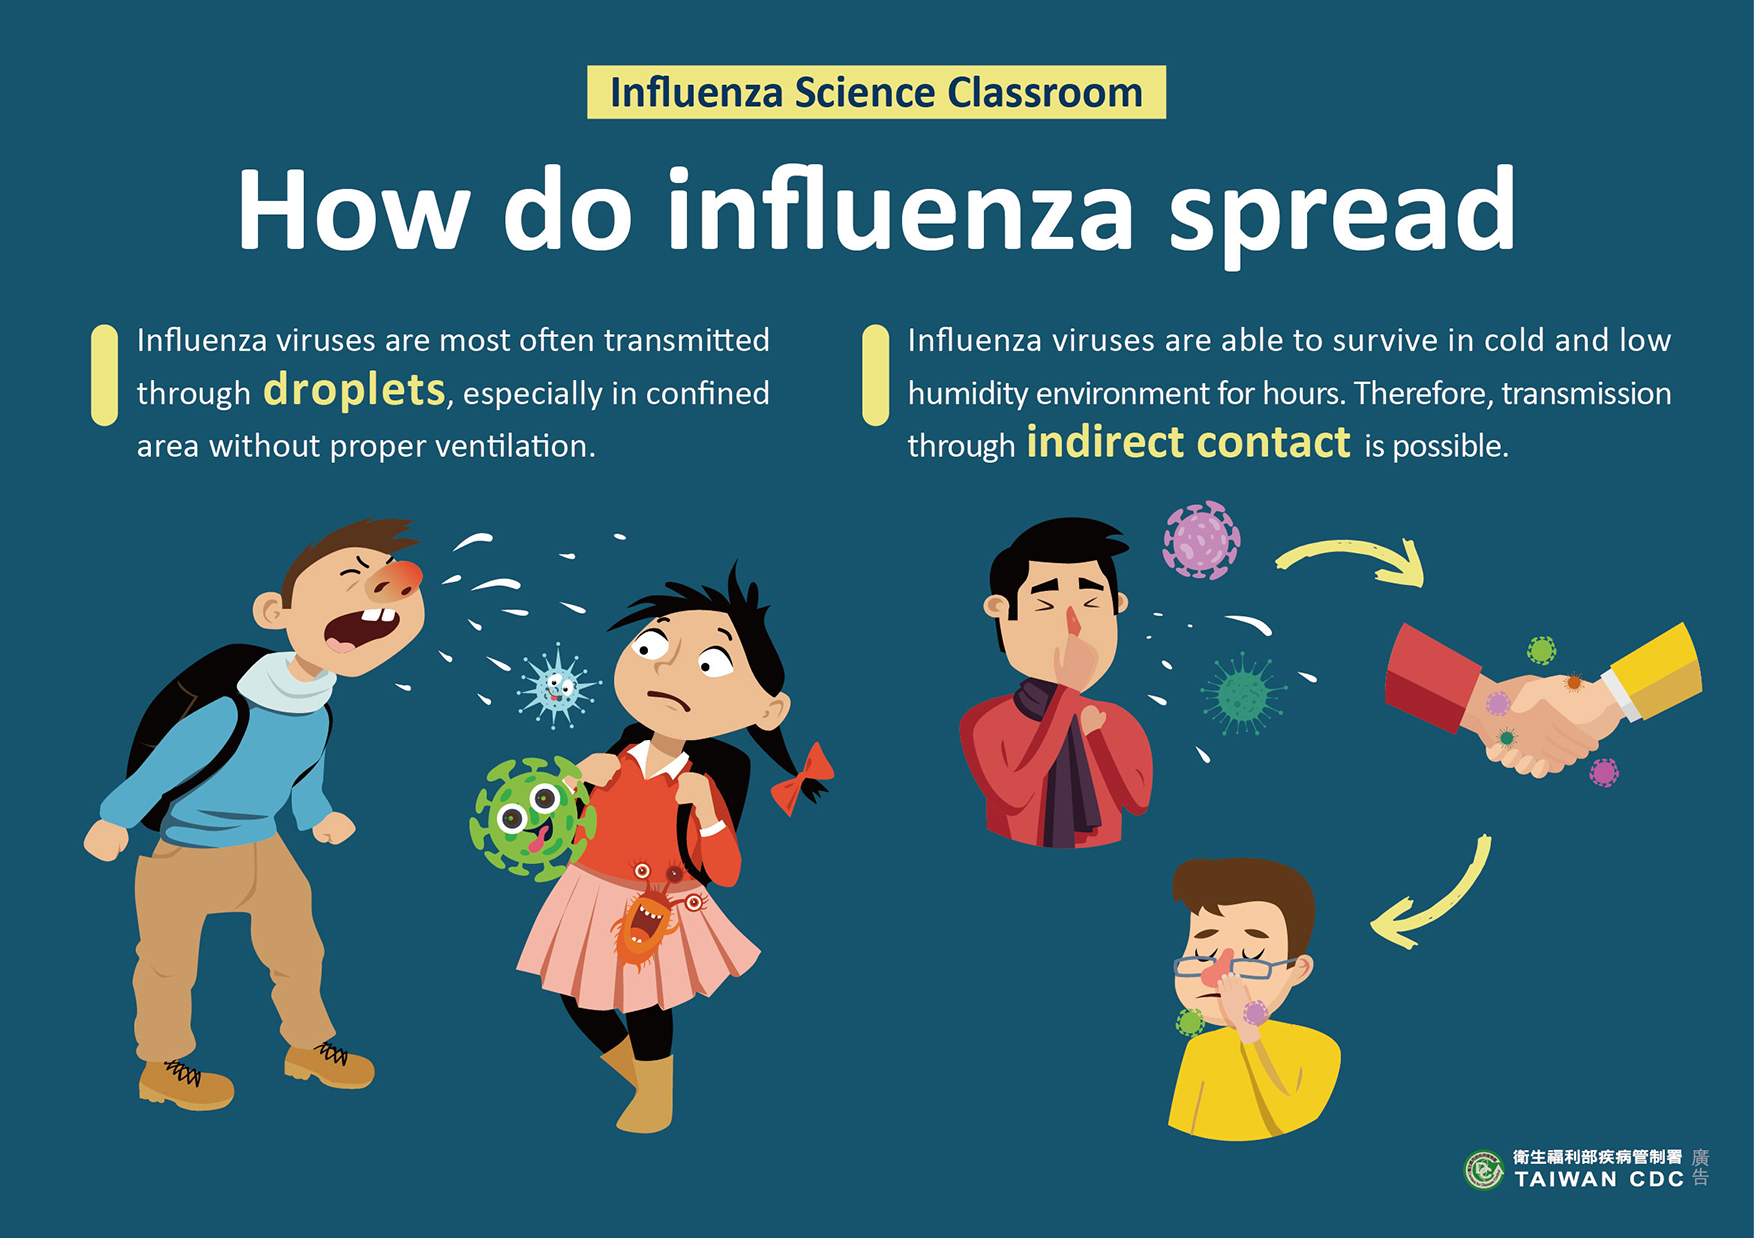 詳如附件【click me】How do influenza spread流感的傳播方式（英文）